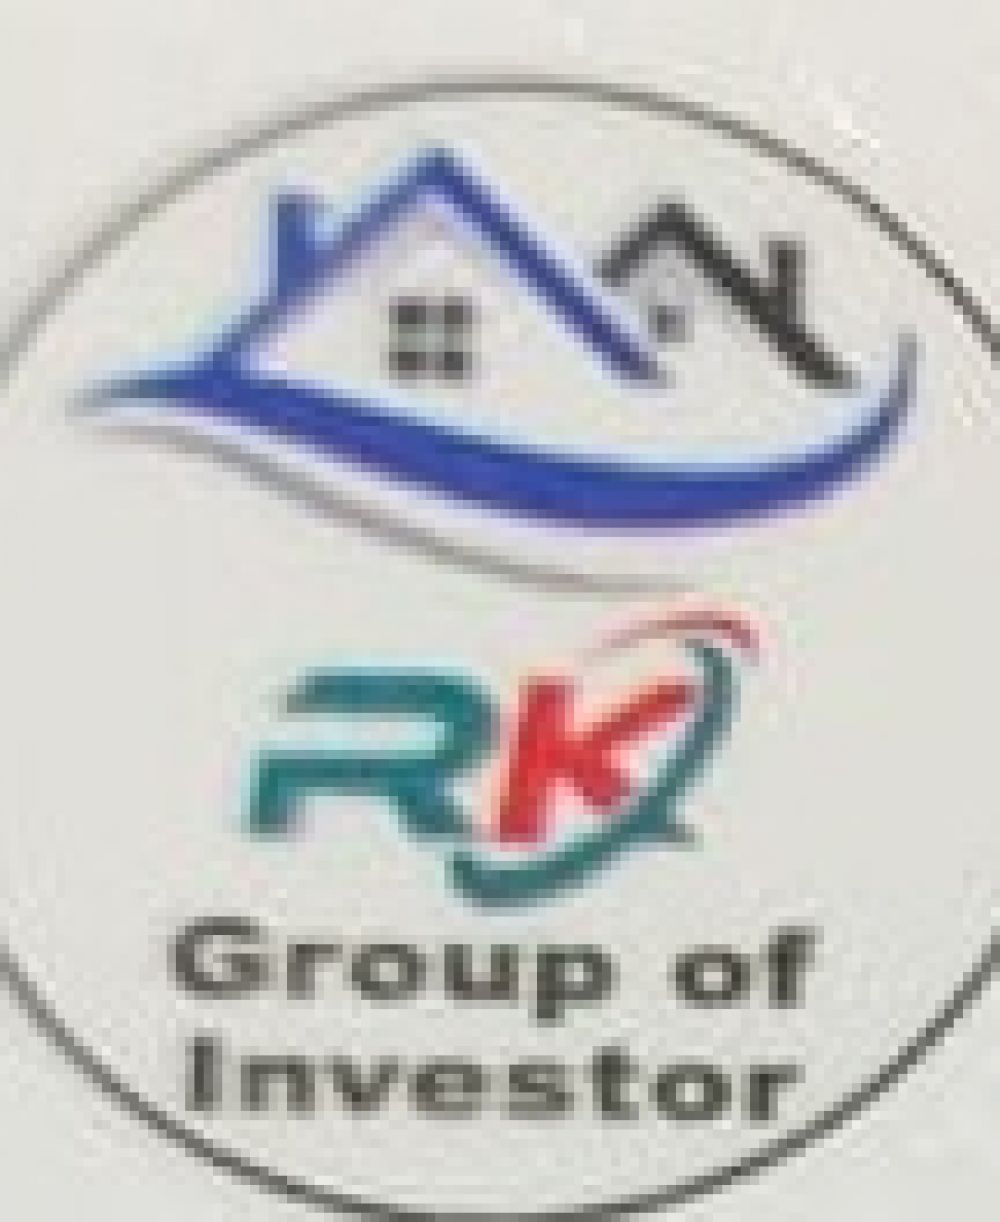 Logo Realestate Agency RK Property Real Estate Deal